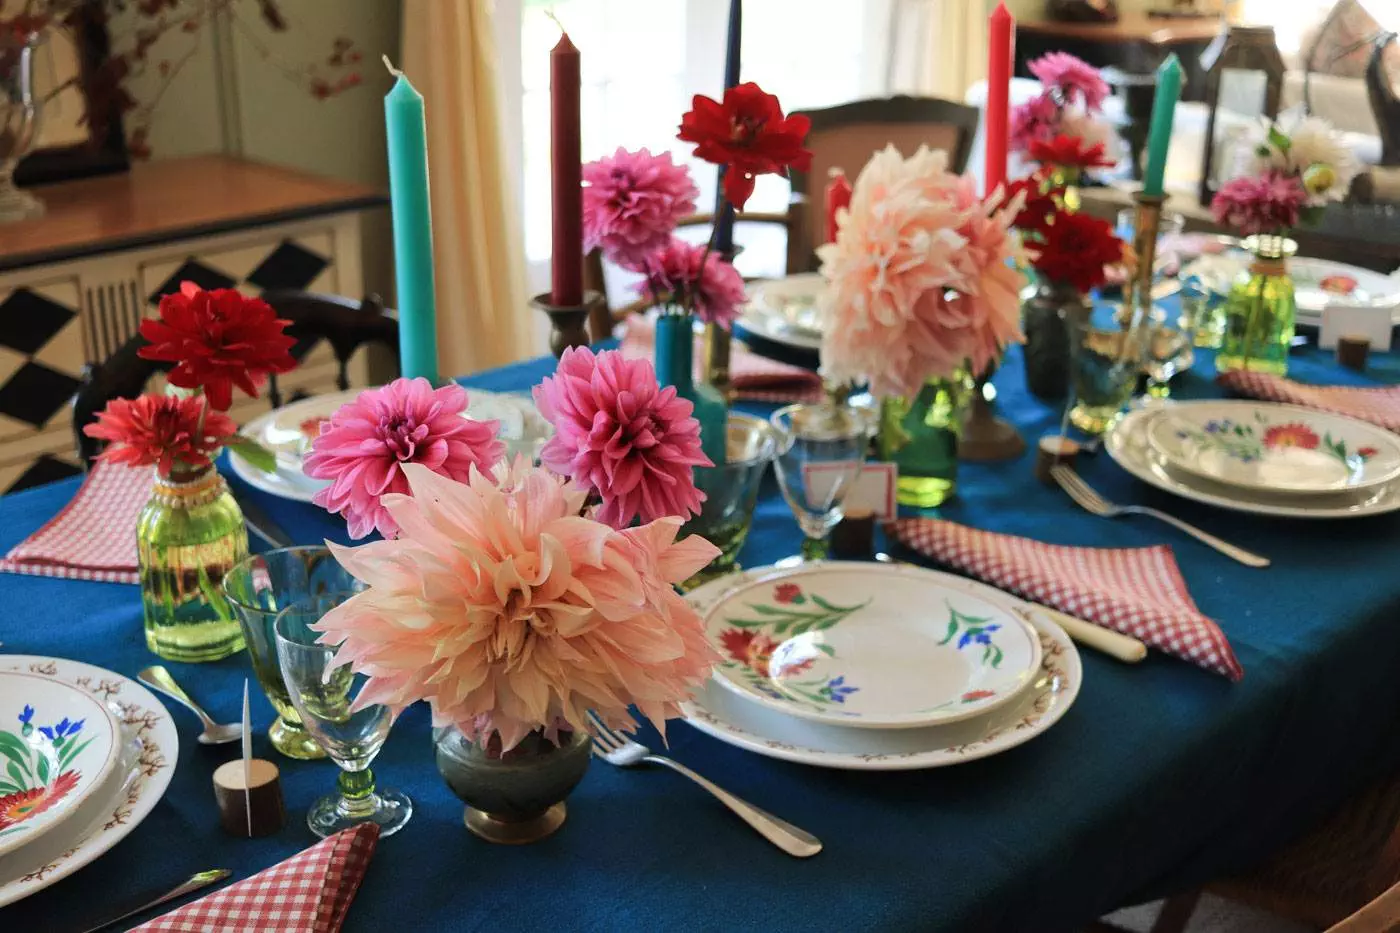 how to set a table with dahlias art de la table dresser une table avec des dahlias